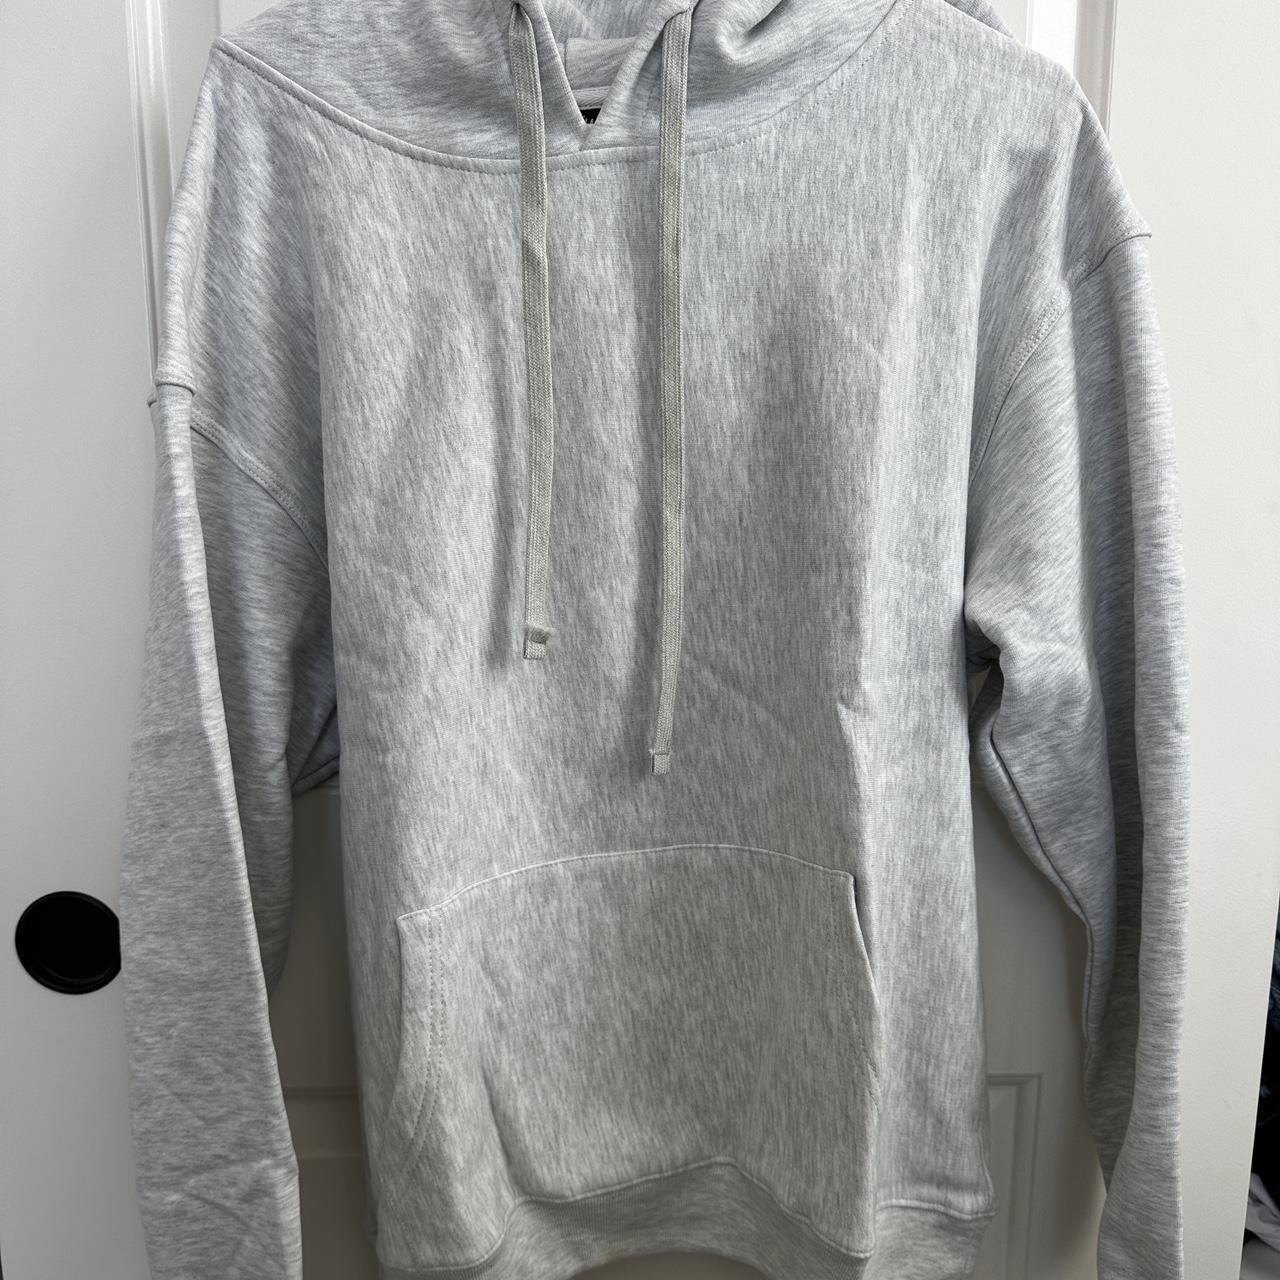 Stussy hoodie Back hood applique Grey Engraved... - Depop